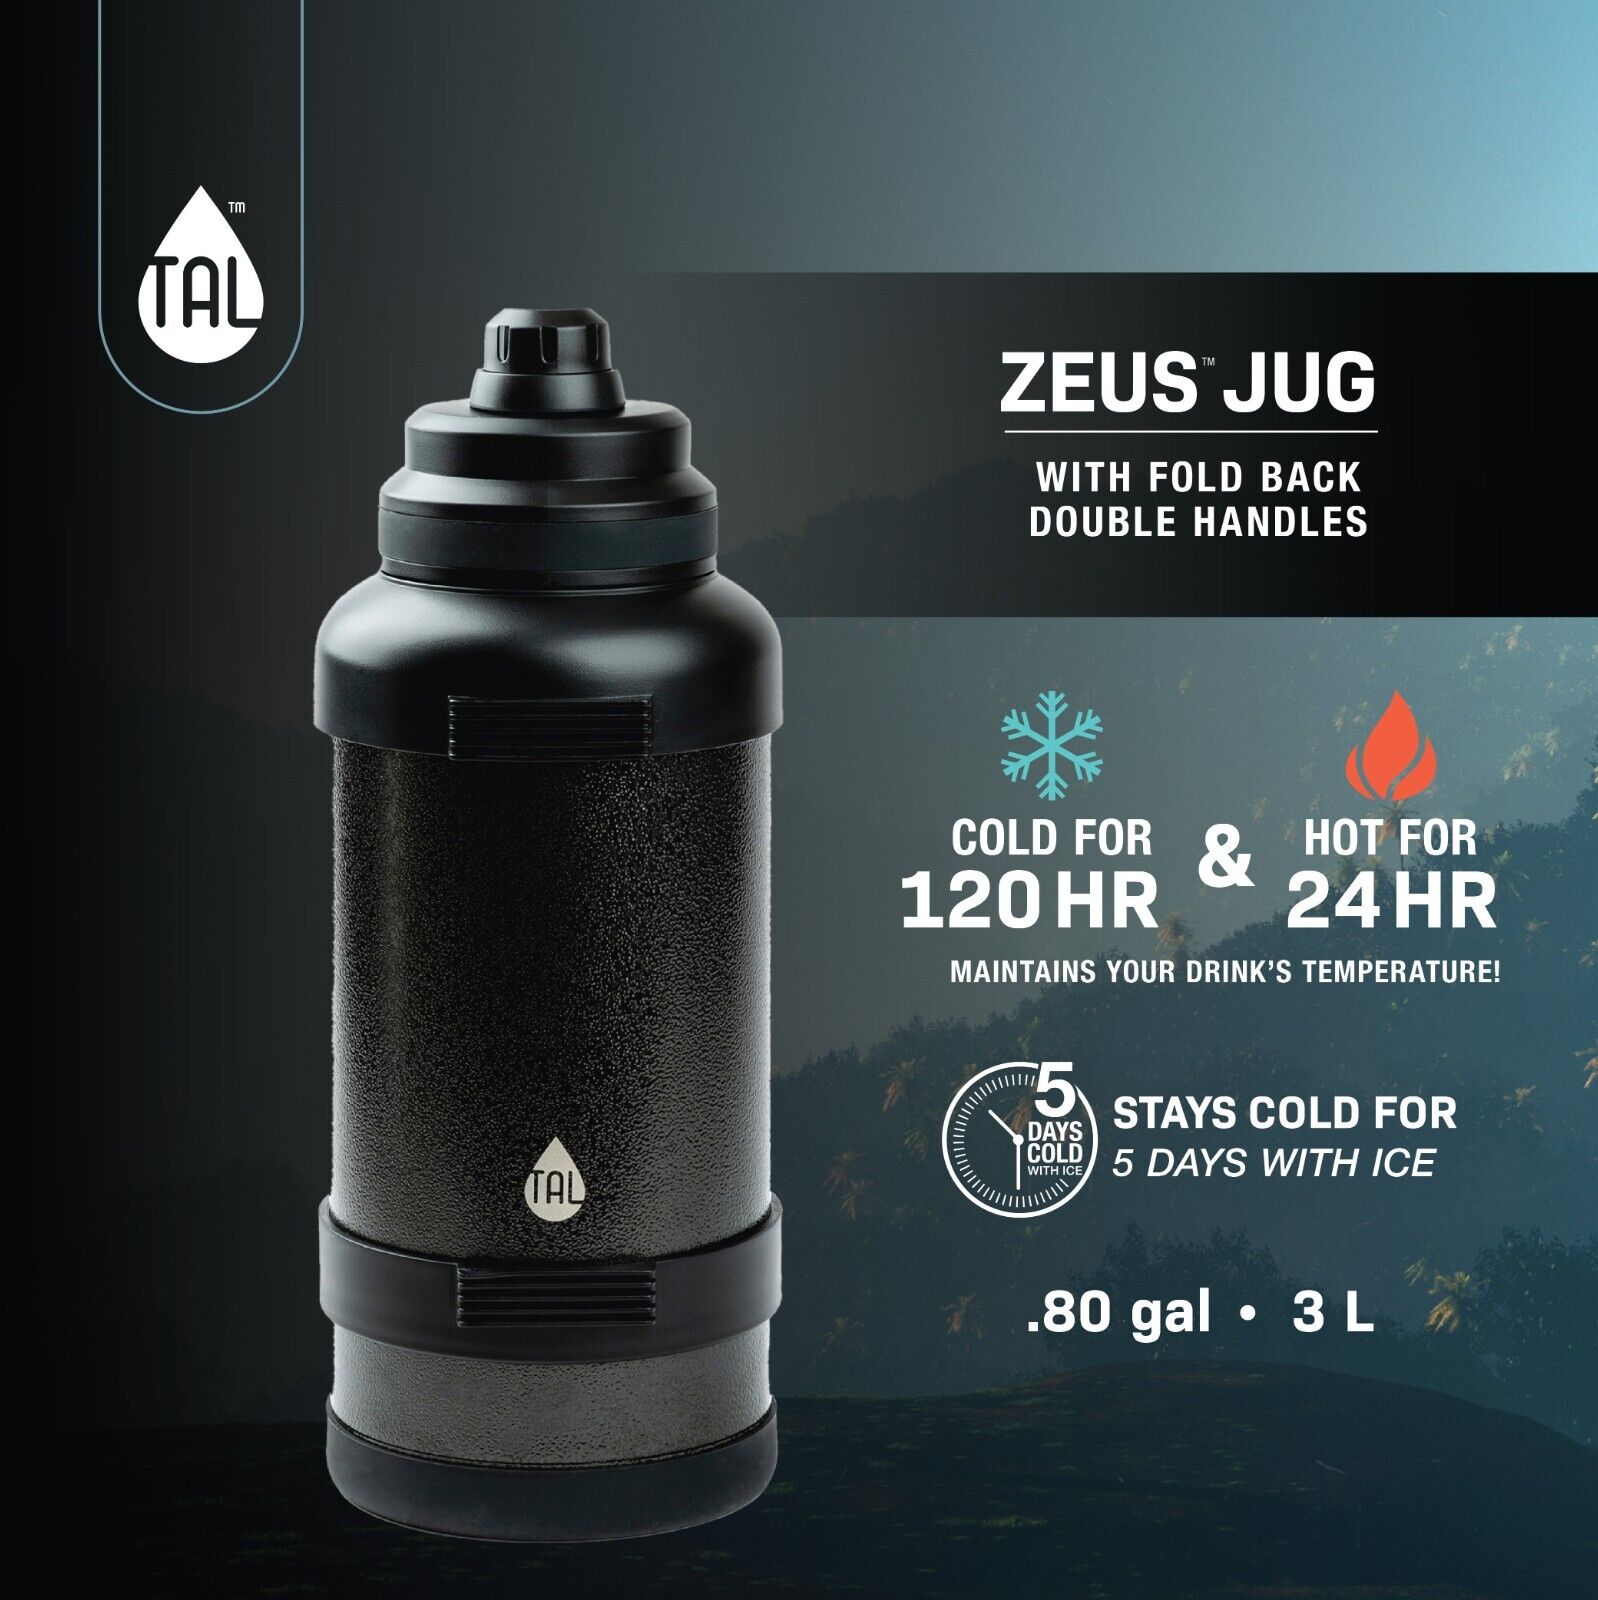 TAL Stainless Steel Zeus Water Bottle 3 Liter, Green Unbranded WM2216 - фотография #3